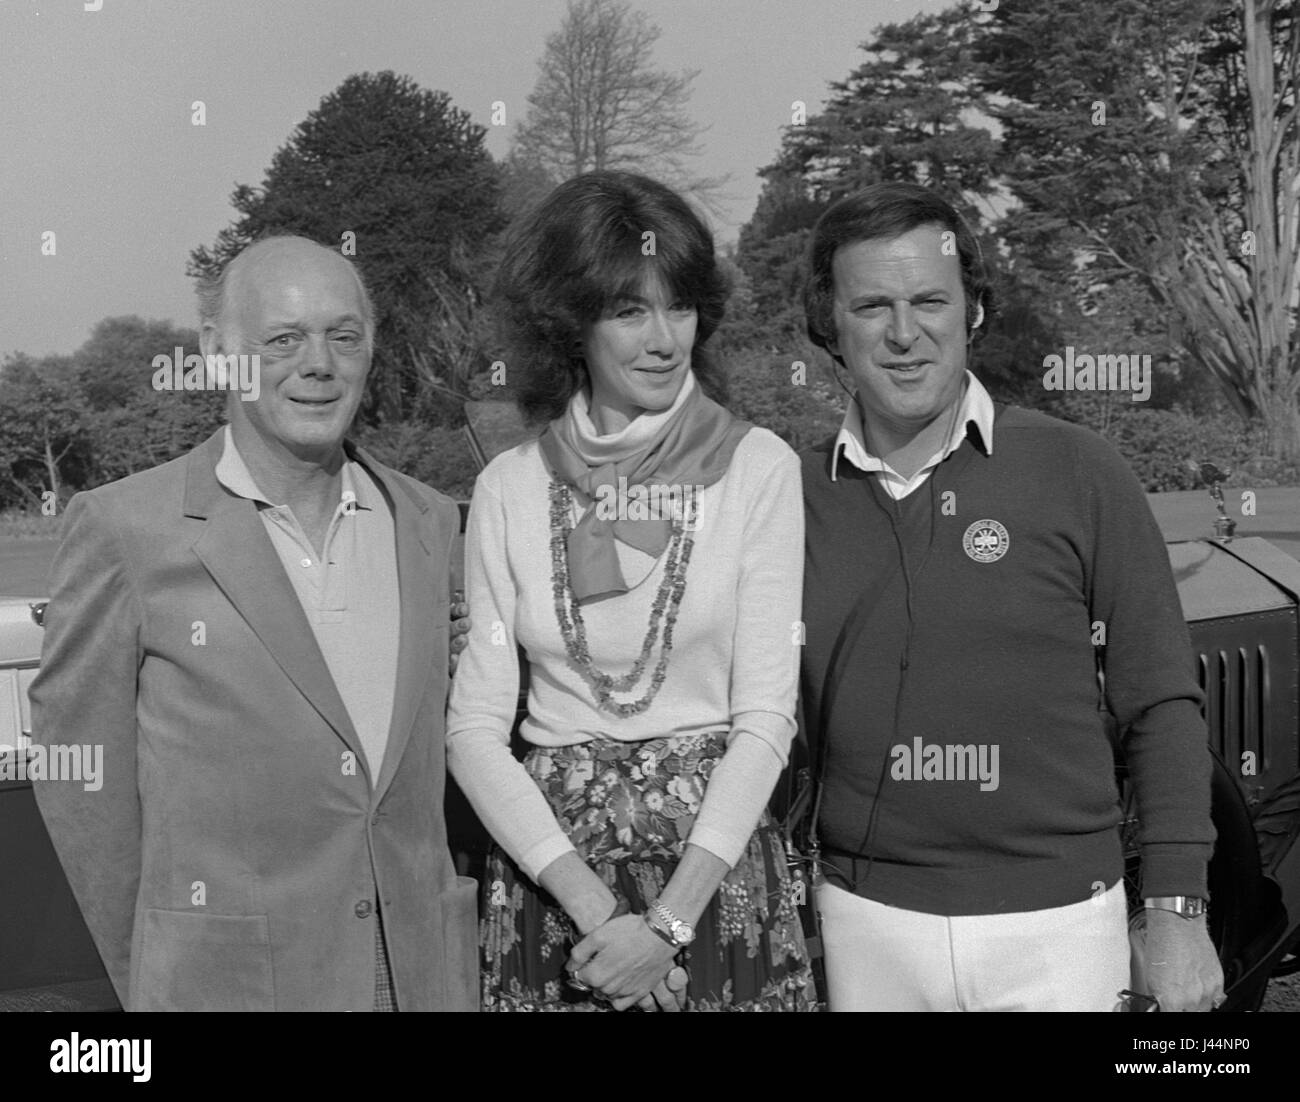 Lord et Lady Montagu avec BBC Broadcaster Terry Wogan à Beaulieu 1982 Banque D'Images